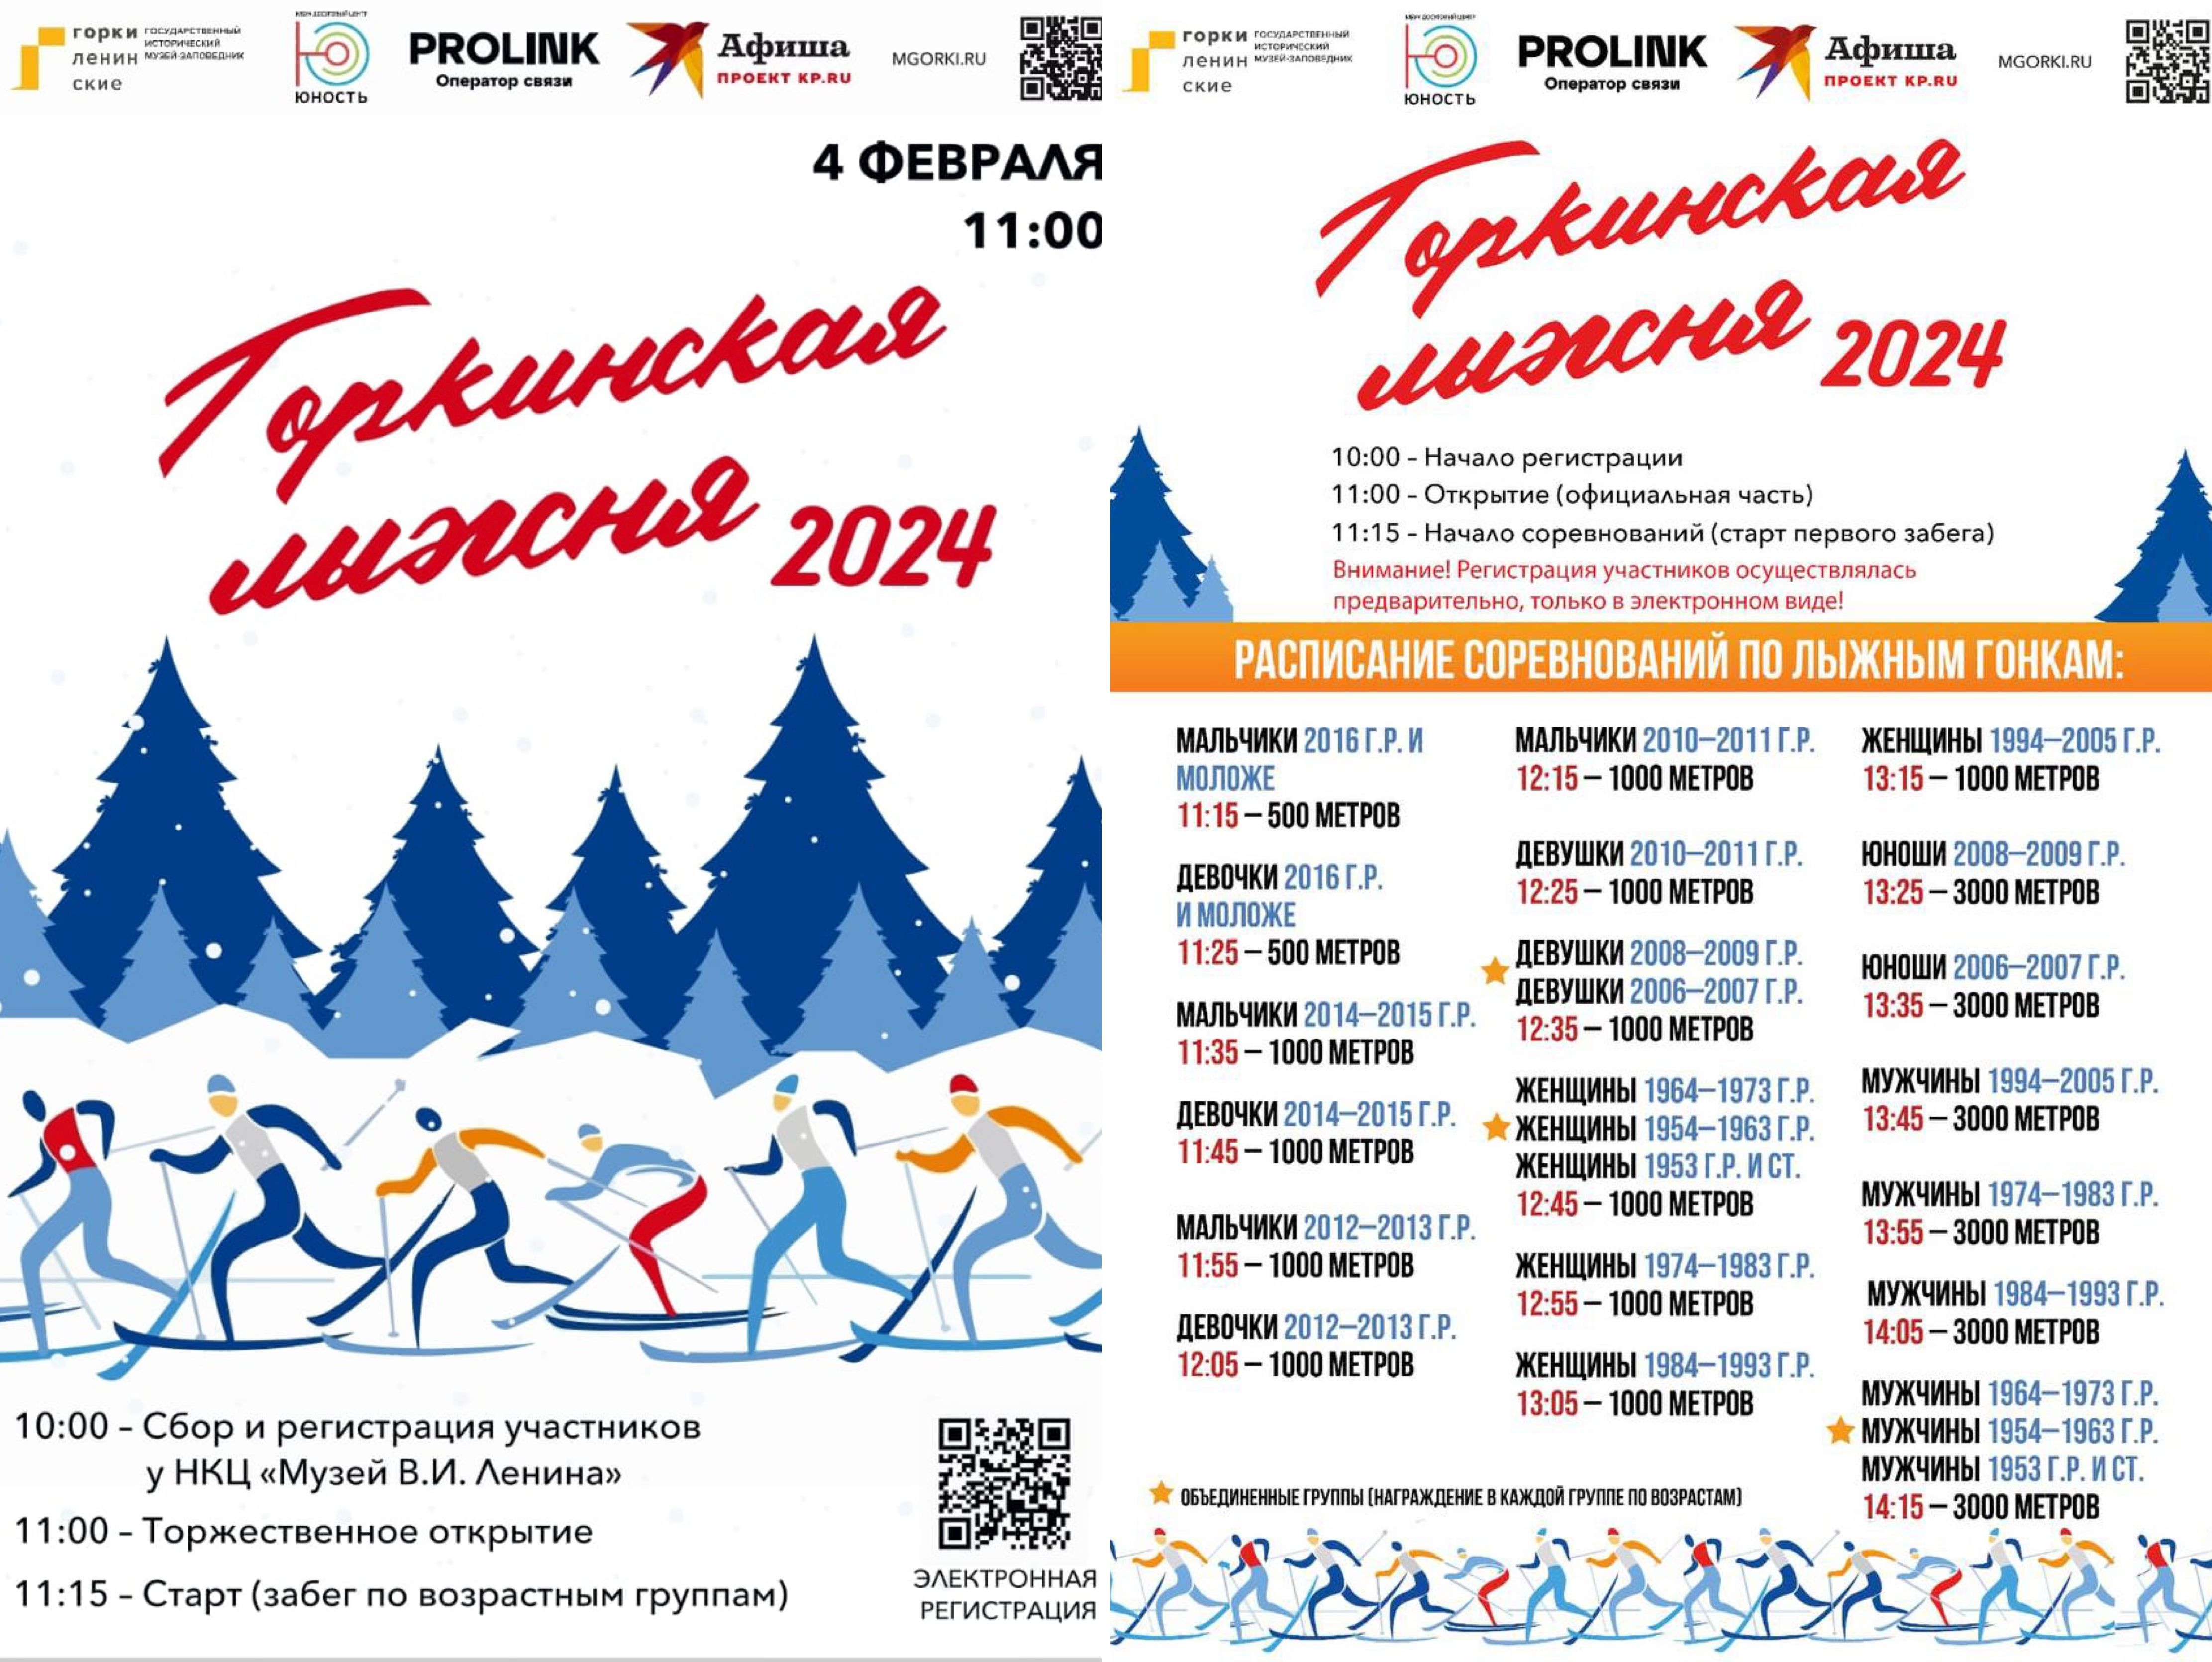 Олимпийский призёр Наталья Коростелёва станет почётным гостем «Горкинской лыжни»